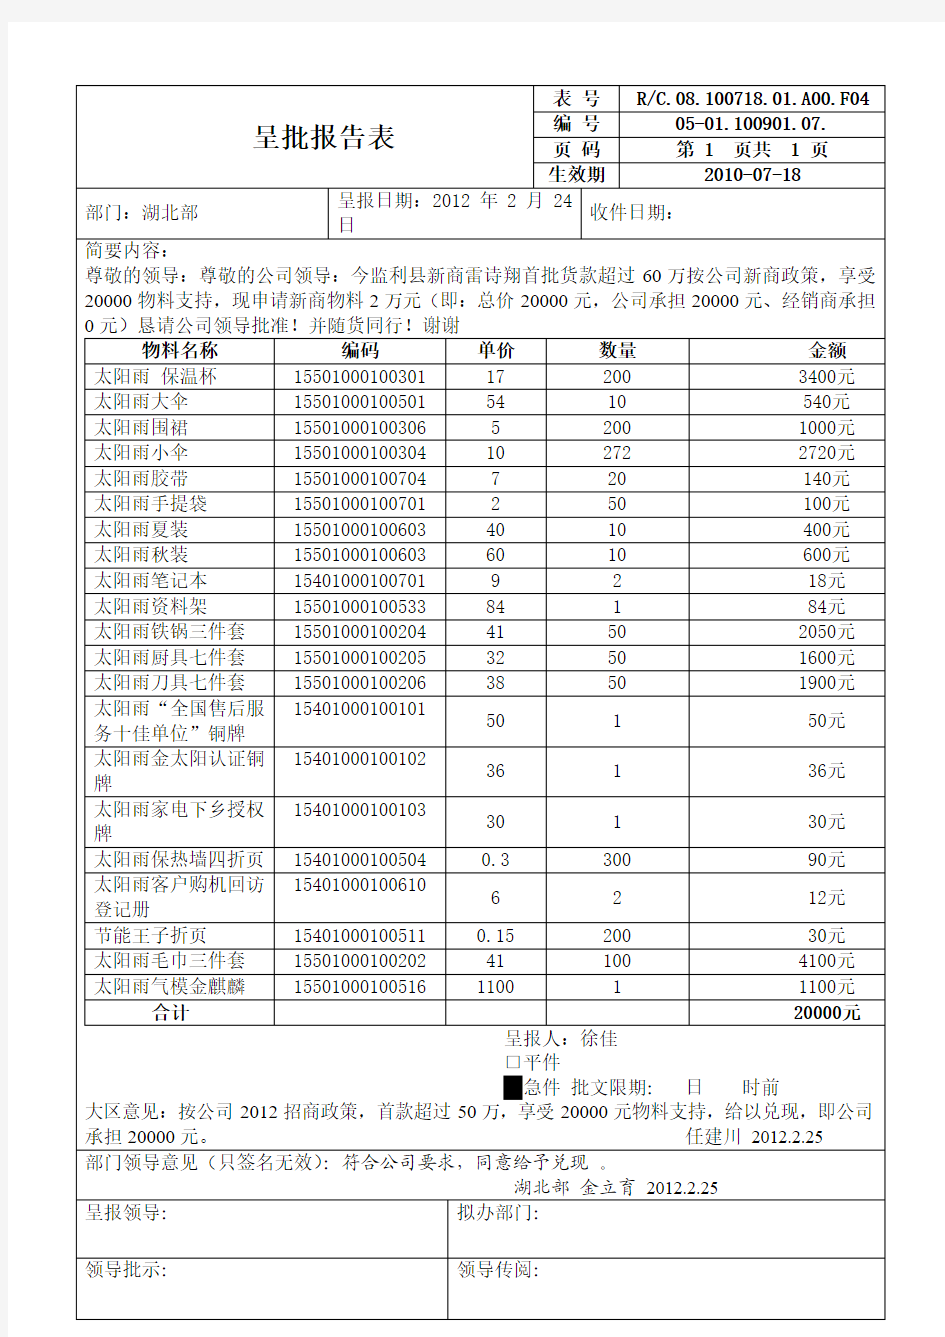 监利新商物料呈批报告表-2012[1].2.25